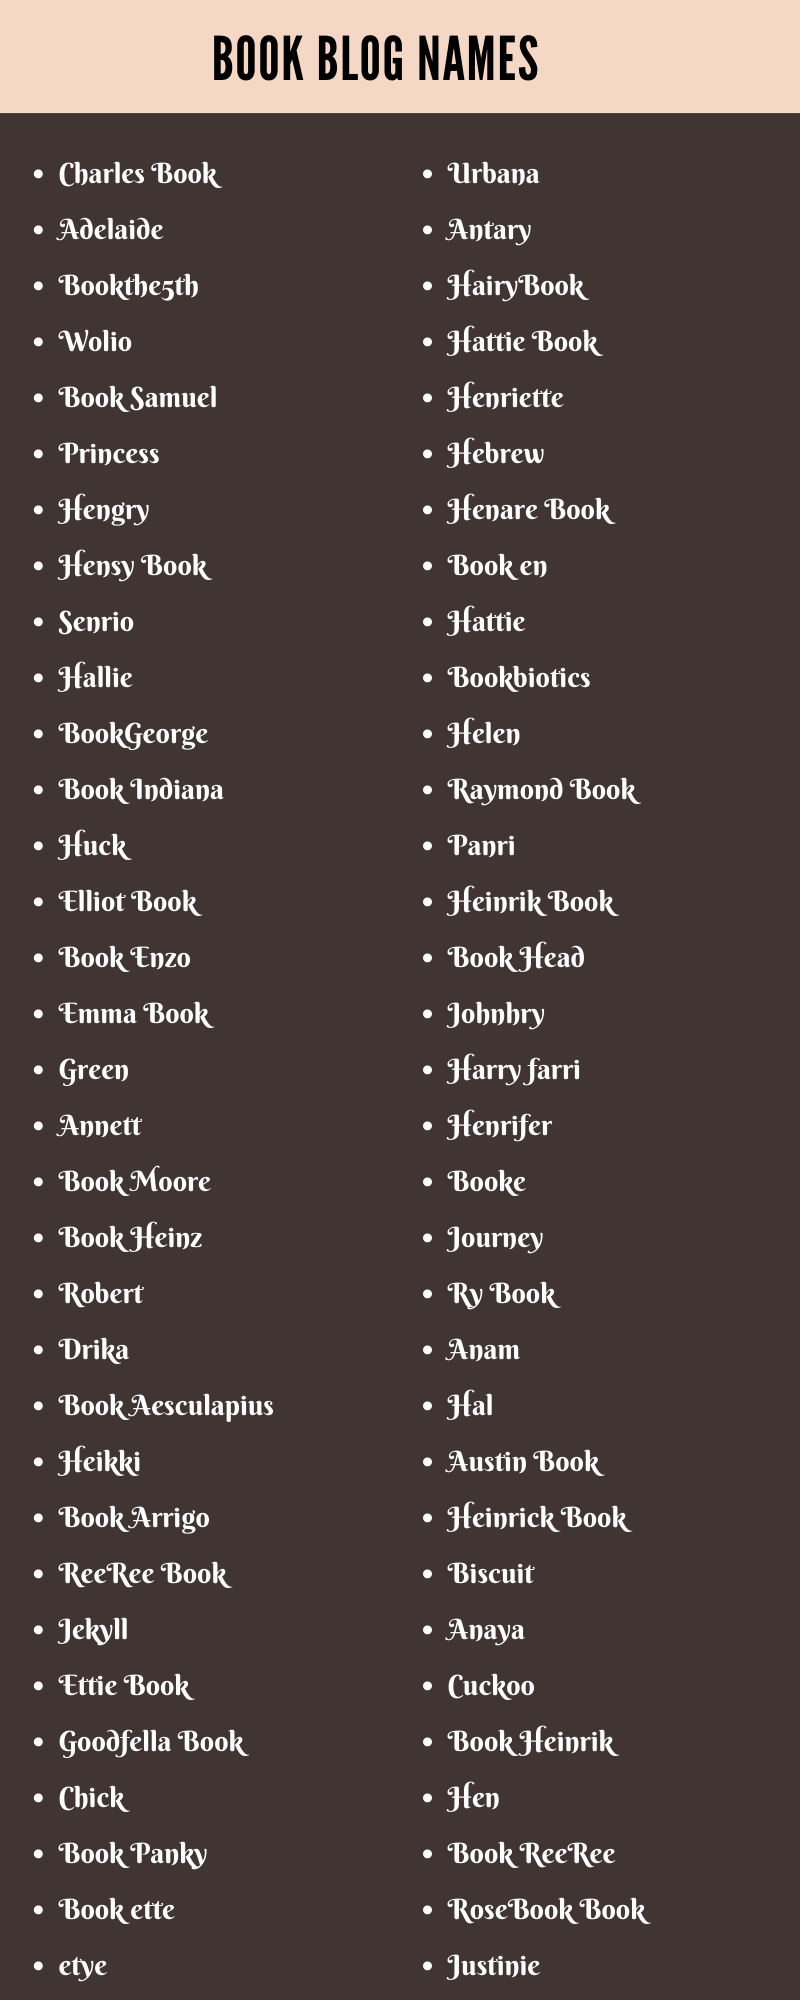 Book Blog Names